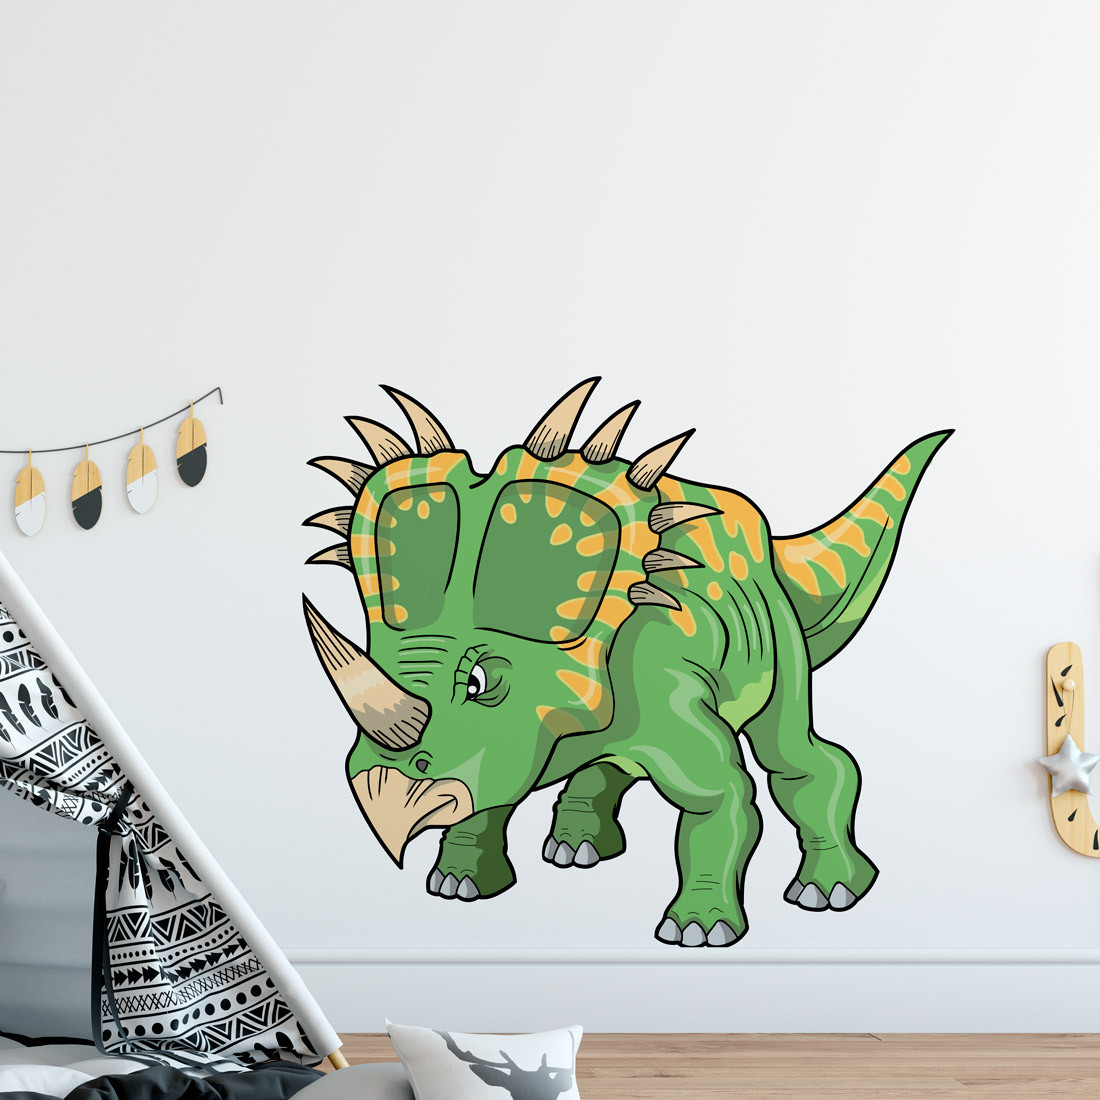 Adesivo de Parede Infantil de Desenho de Dinossauro